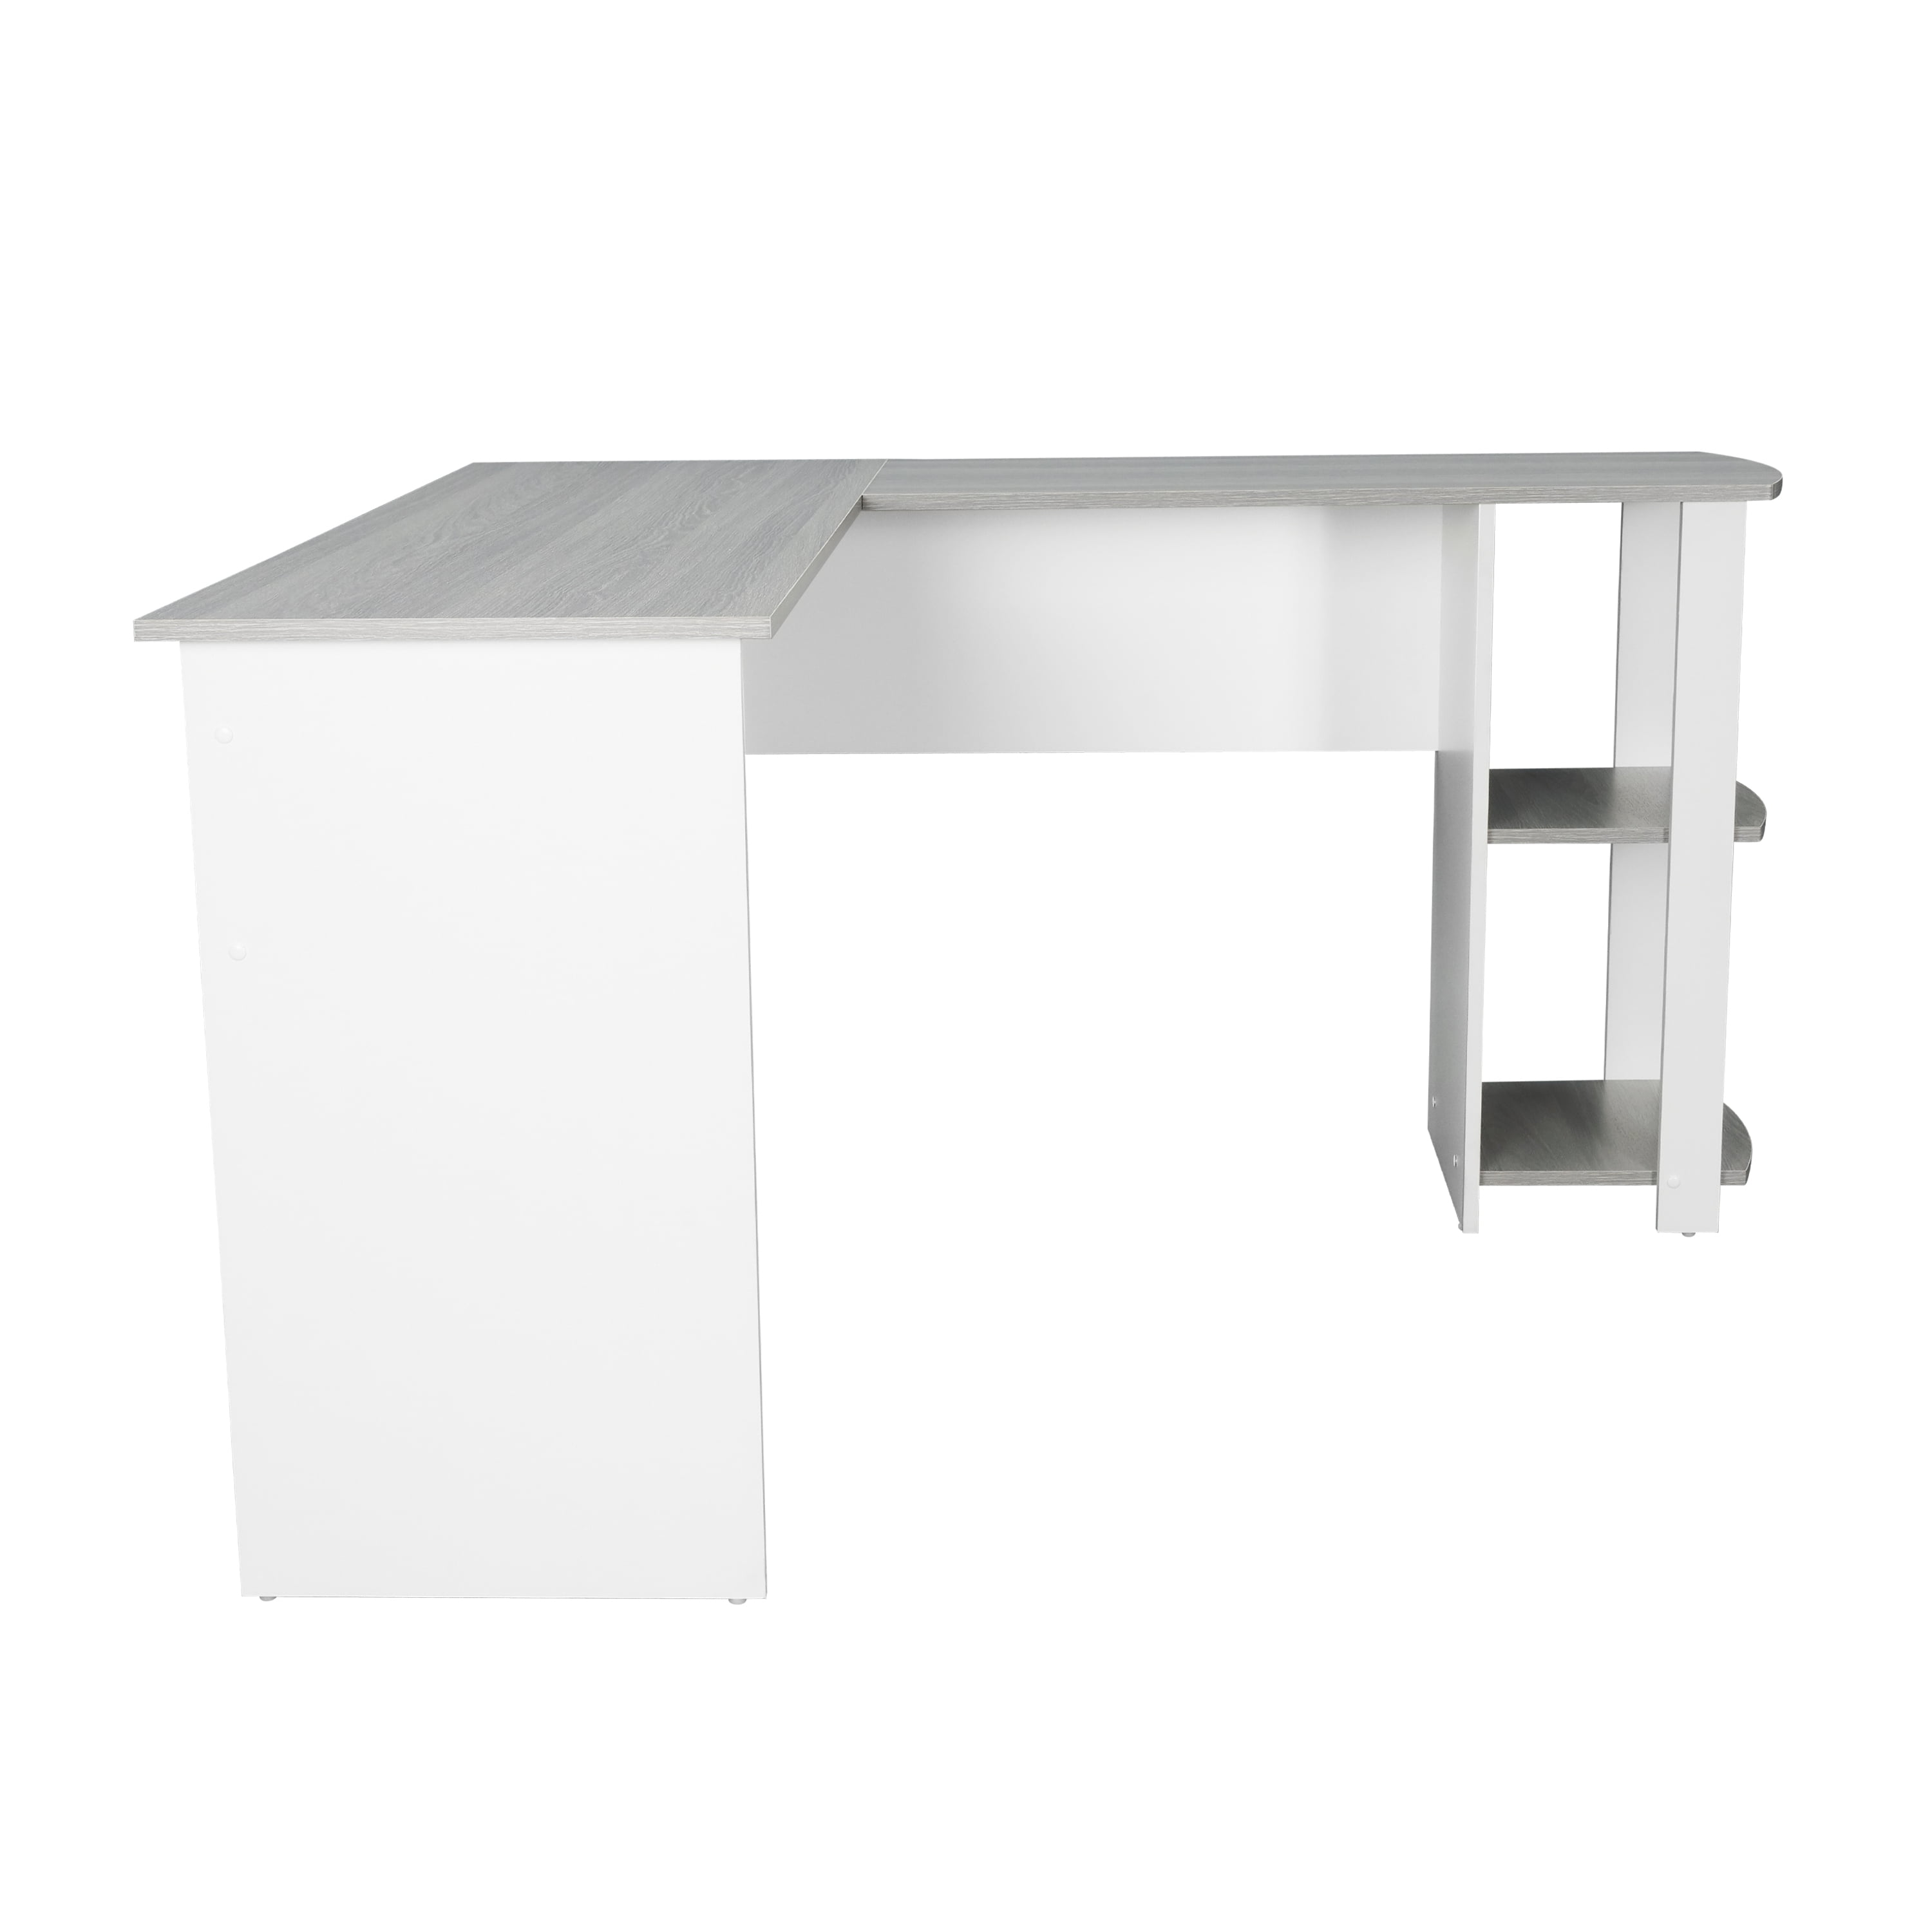 Techni Mobili Modern L-Shaped Desk Grey Side Shelves, with